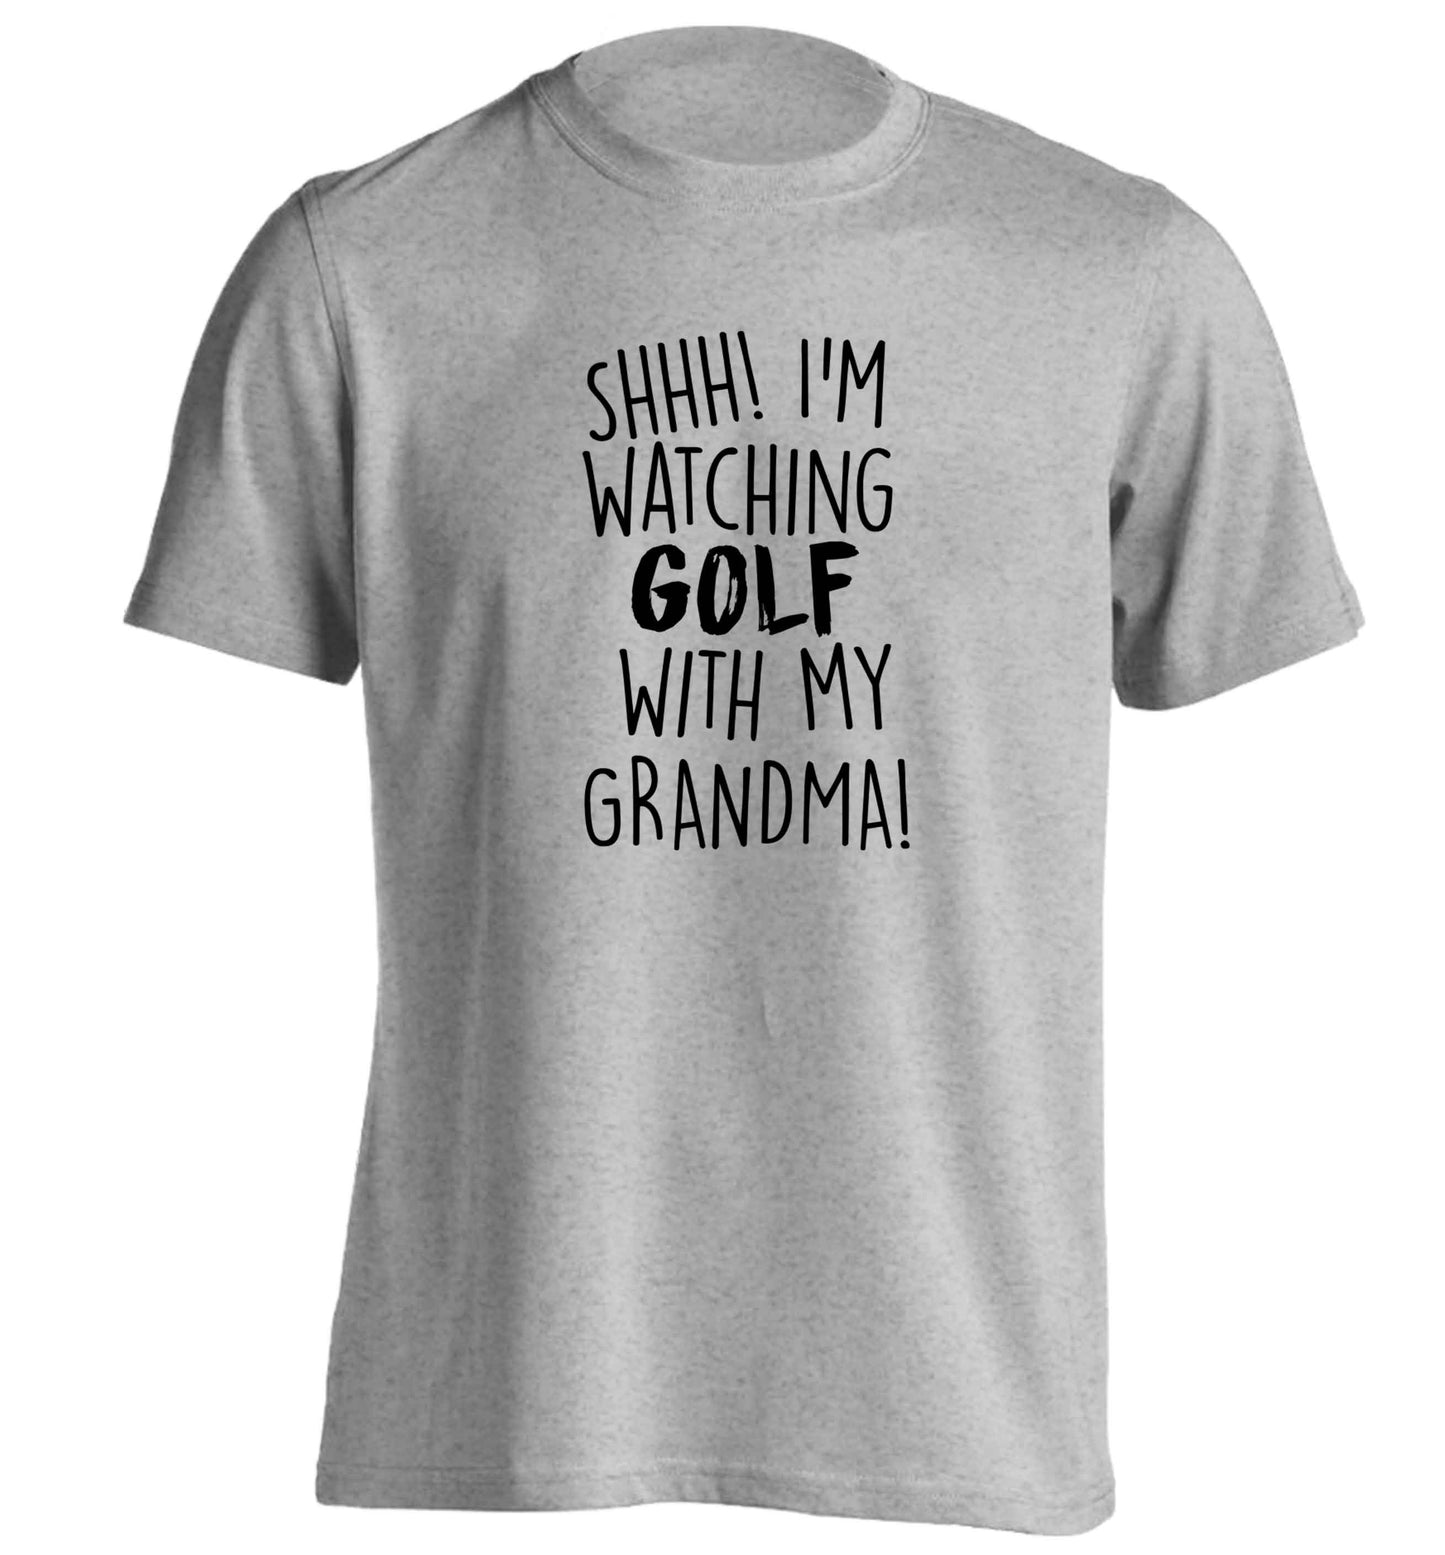 Shh I'm watching golf with my grandma adults unisex grey Tshirt 2XL